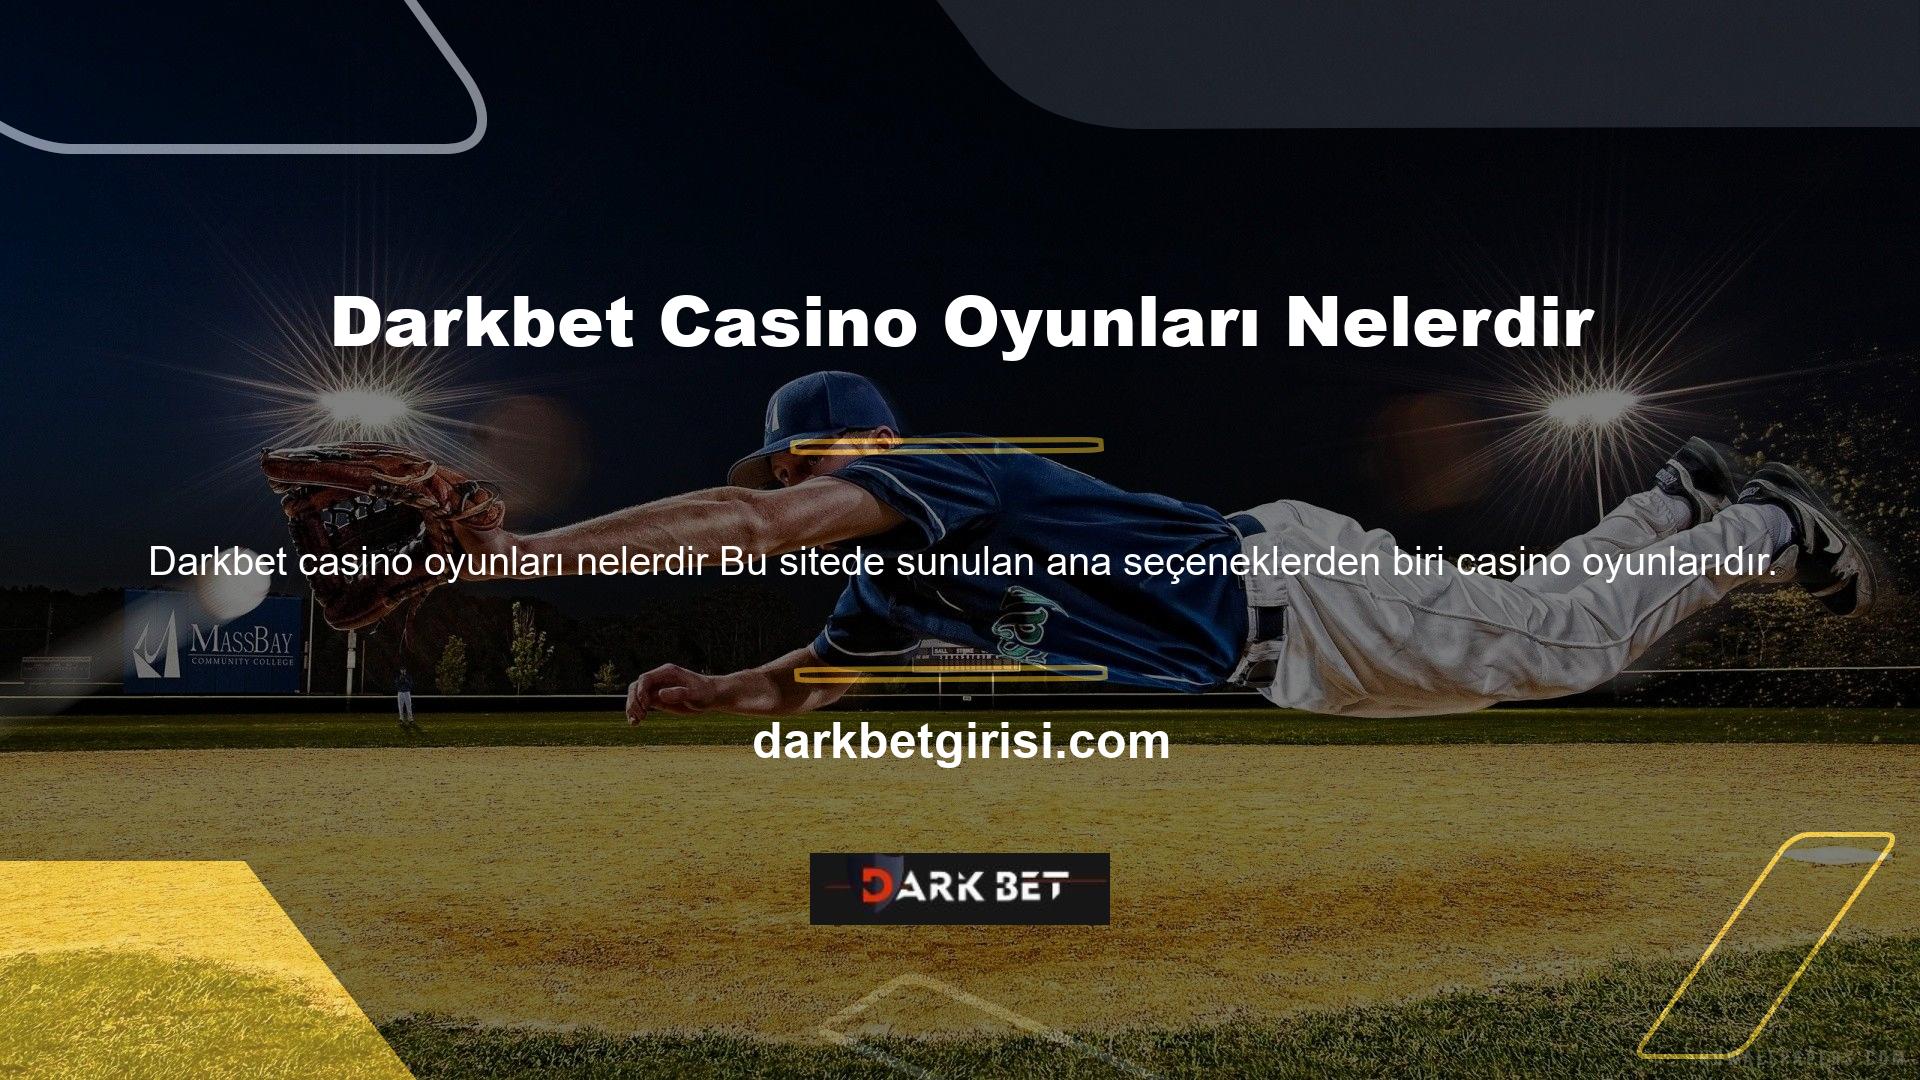 Darkbet Casino oyunlarının neler olduğunu araştırdığımda casinonun bu bölümünün müşterilerine rulet, bakara, blackjack, slot makineleri sunduğunu ve poker bölümünün de olduğunu öğrendim